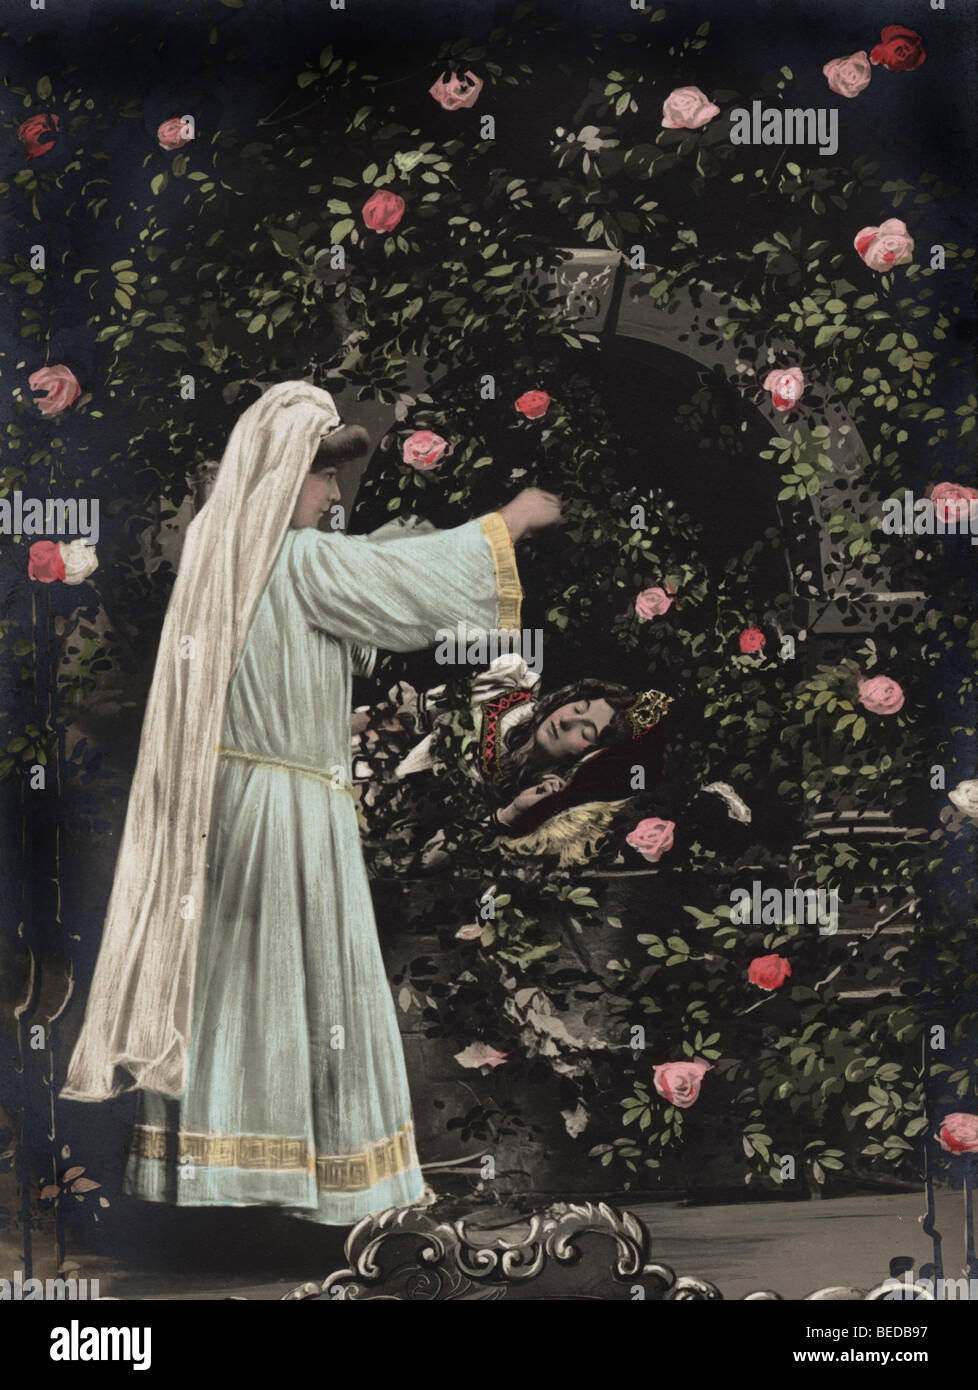 Sleeping Beauty, raffigurazione di una fiaba, fotografia storica, intorno al 1912 Foto Stock